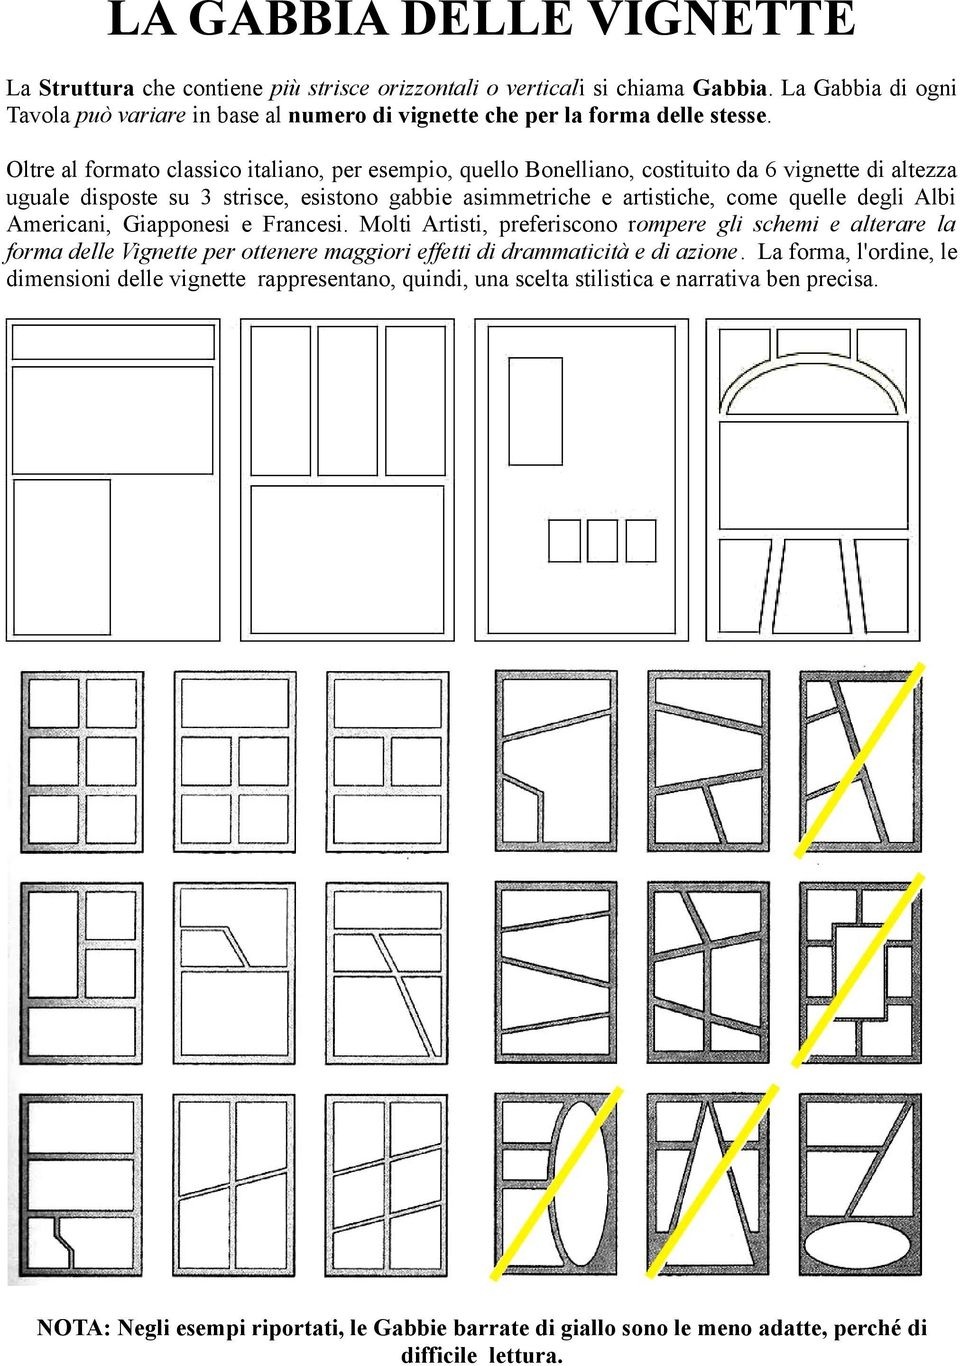 Oltre al formato classico italiano, per esempio, quello Bonelliano, costituito da 6 vignette di altezza uguale disposte su 3 strisce, esistono gabbie asimmetriche e artistiche, come quelle degli Albi